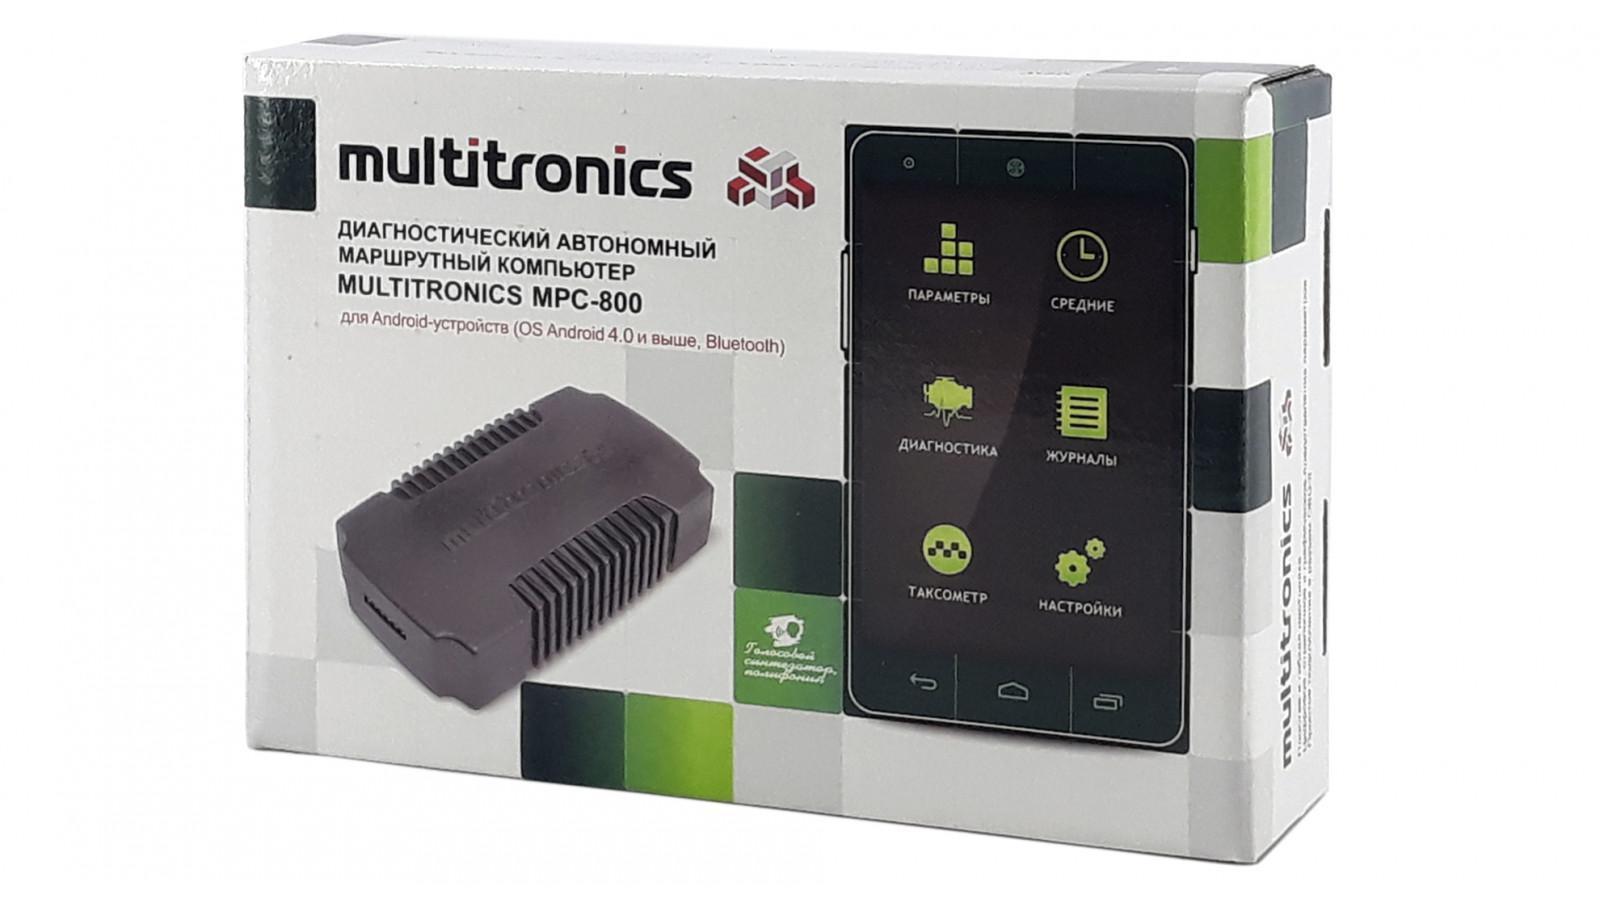 Multitronics mpc 800 अन-बोर्ड कम्प्युटर: मोडेल फाइदाहरू, निर्देशनहरू, चालक समीक्षाहरू